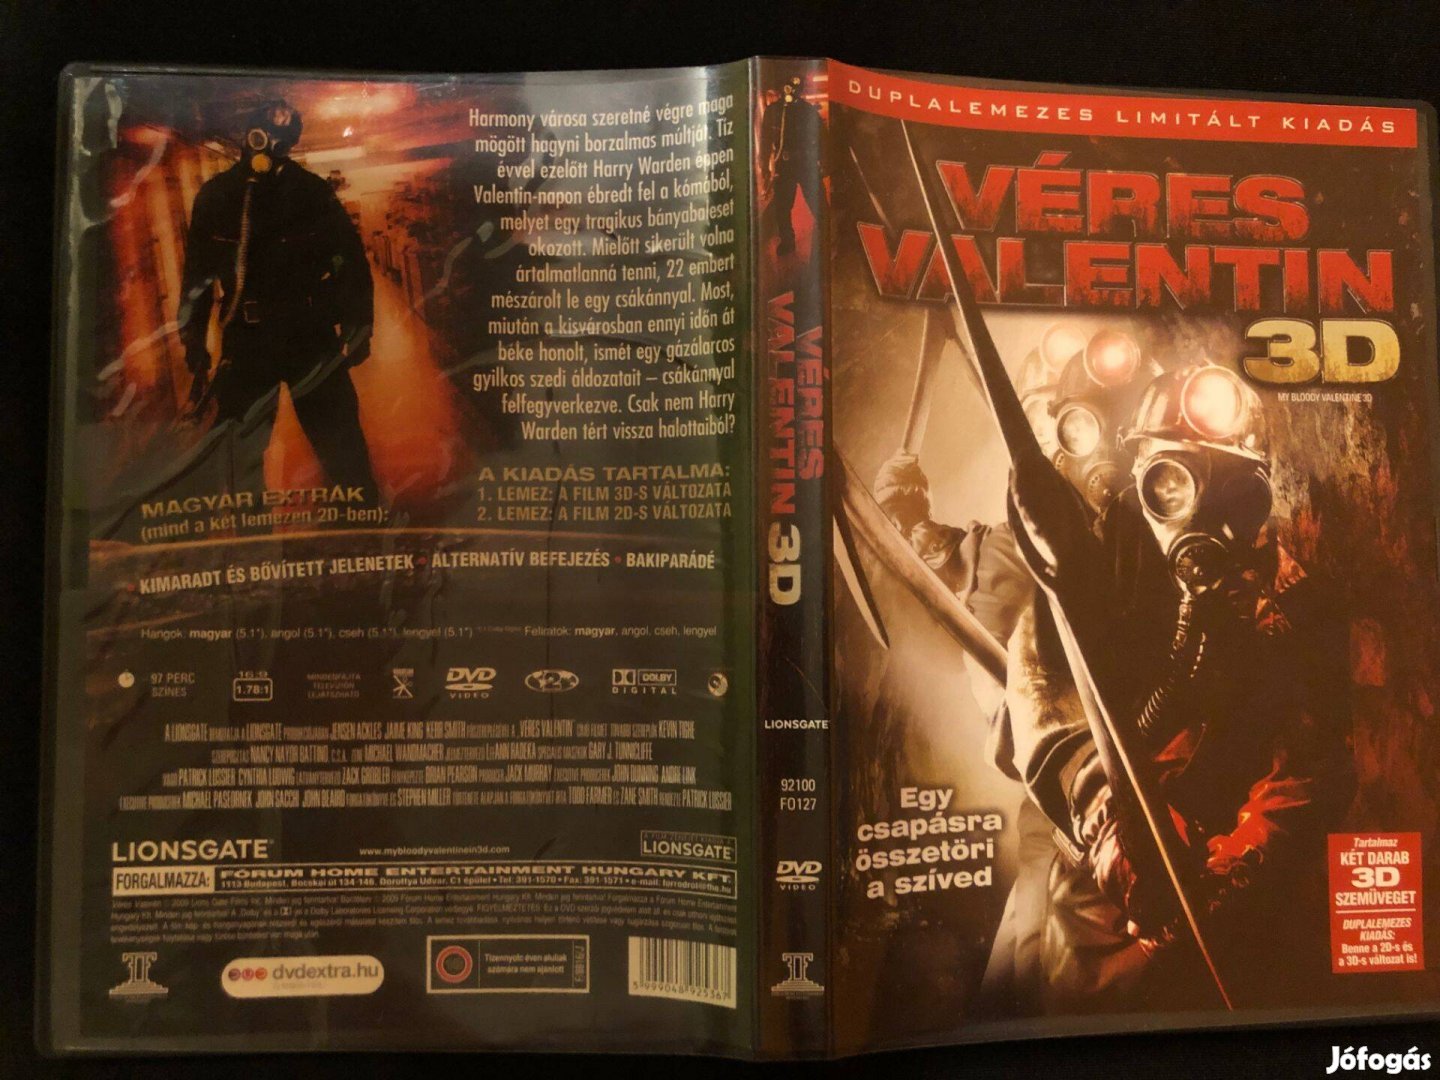 Véres Valentin 3D DVD (2D és 3D duplalemezes limitált + 3D szemüveg)